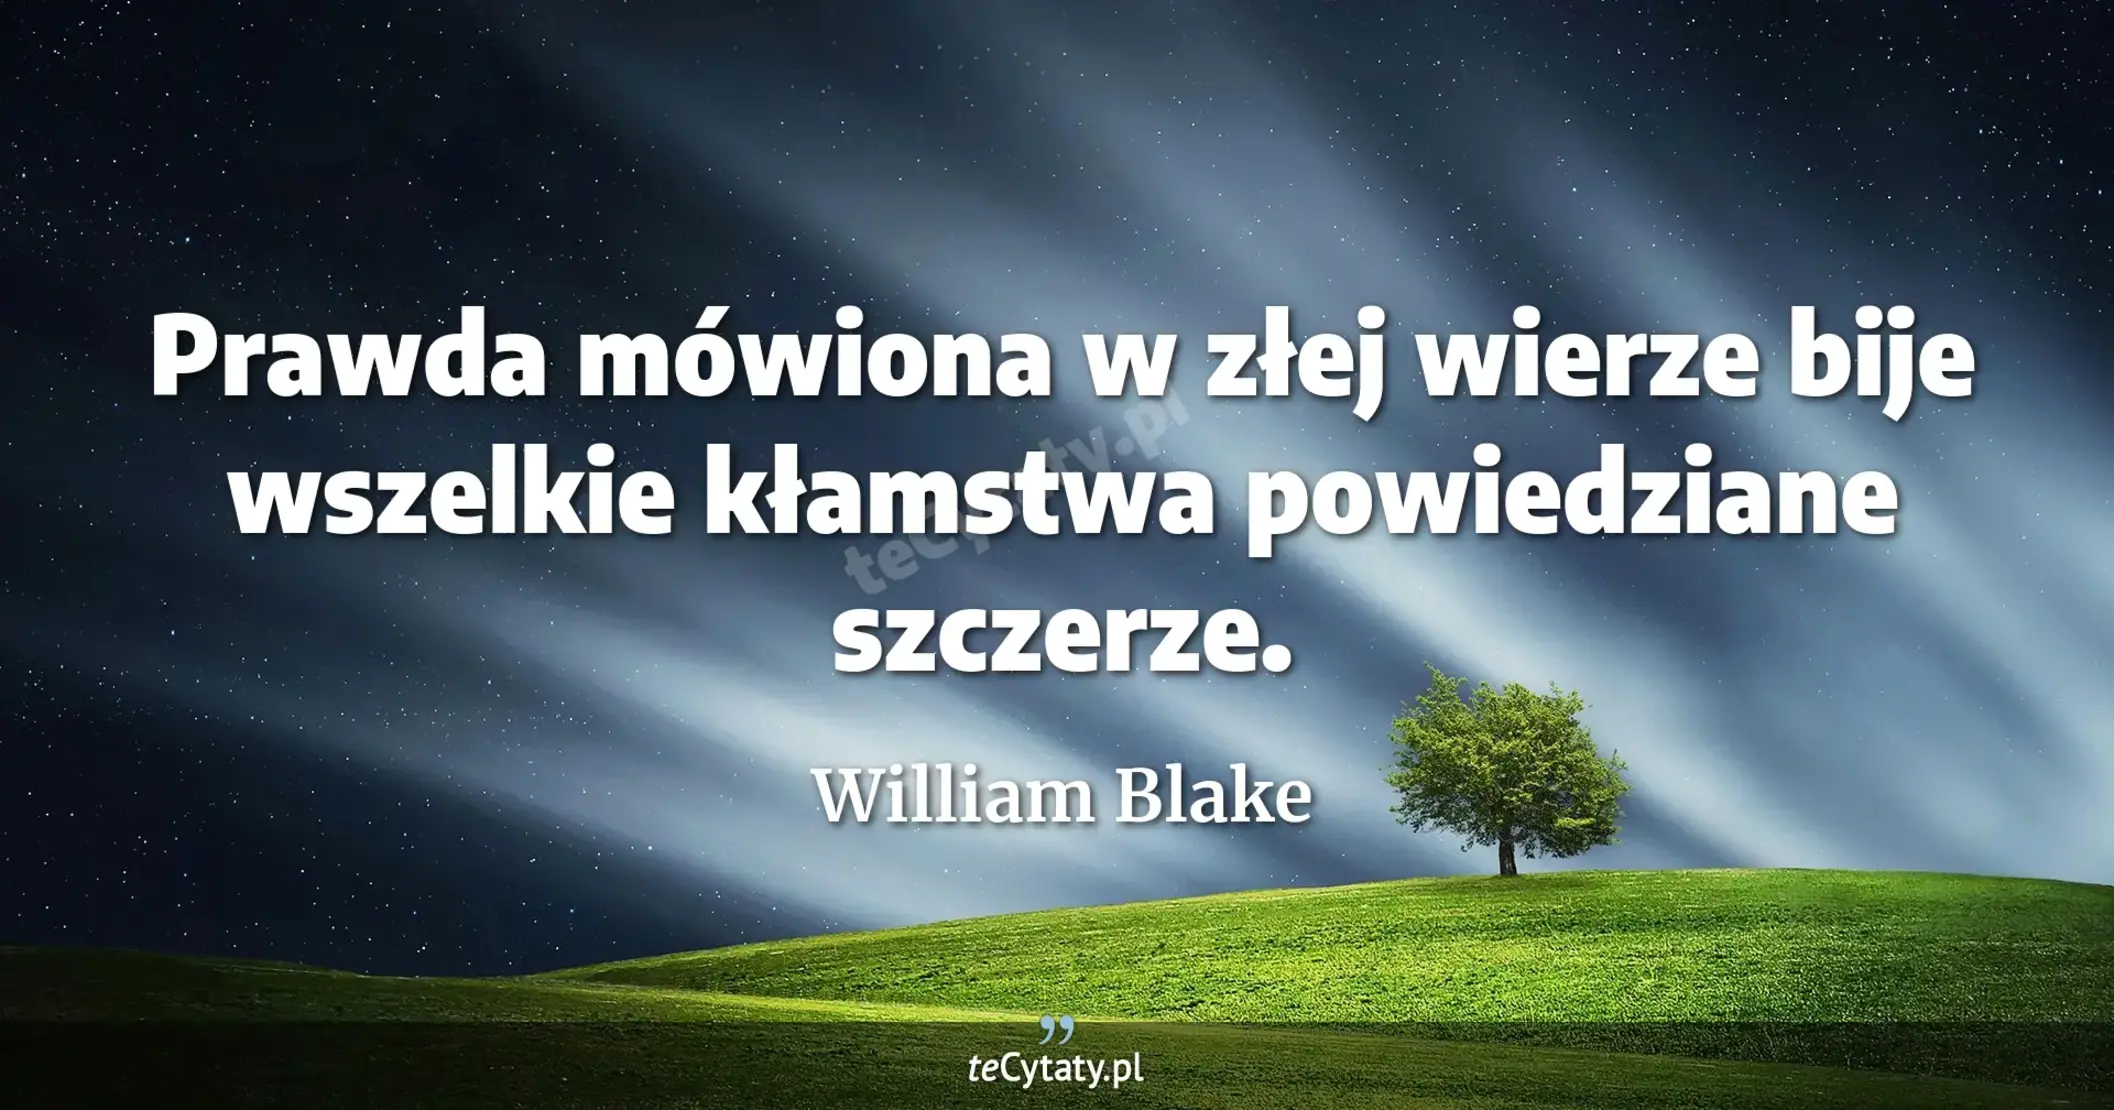 Prawda mówiona w złej wierze bije wszelkie kłamstwa powiedziane szczerze. - William Blake